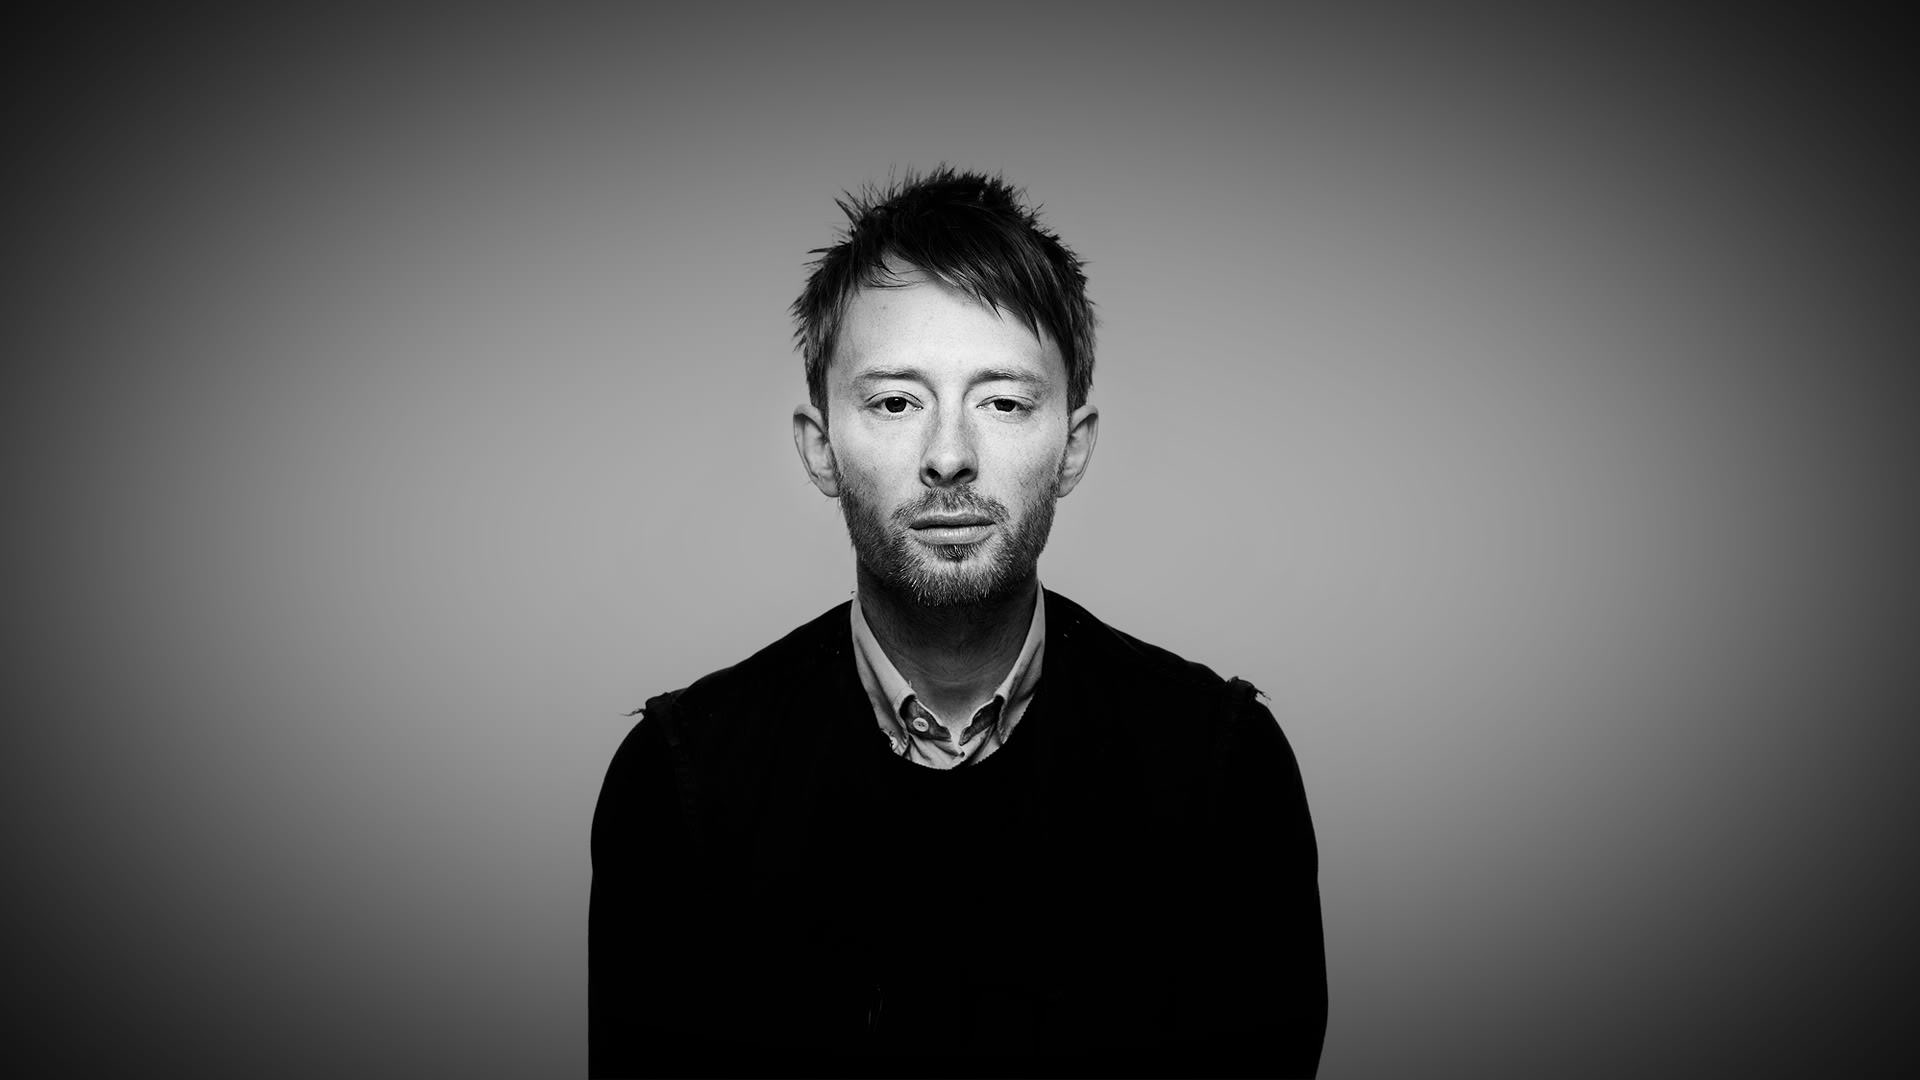 [78+] Thom Yorke Wallpapers | WallpaperSafari